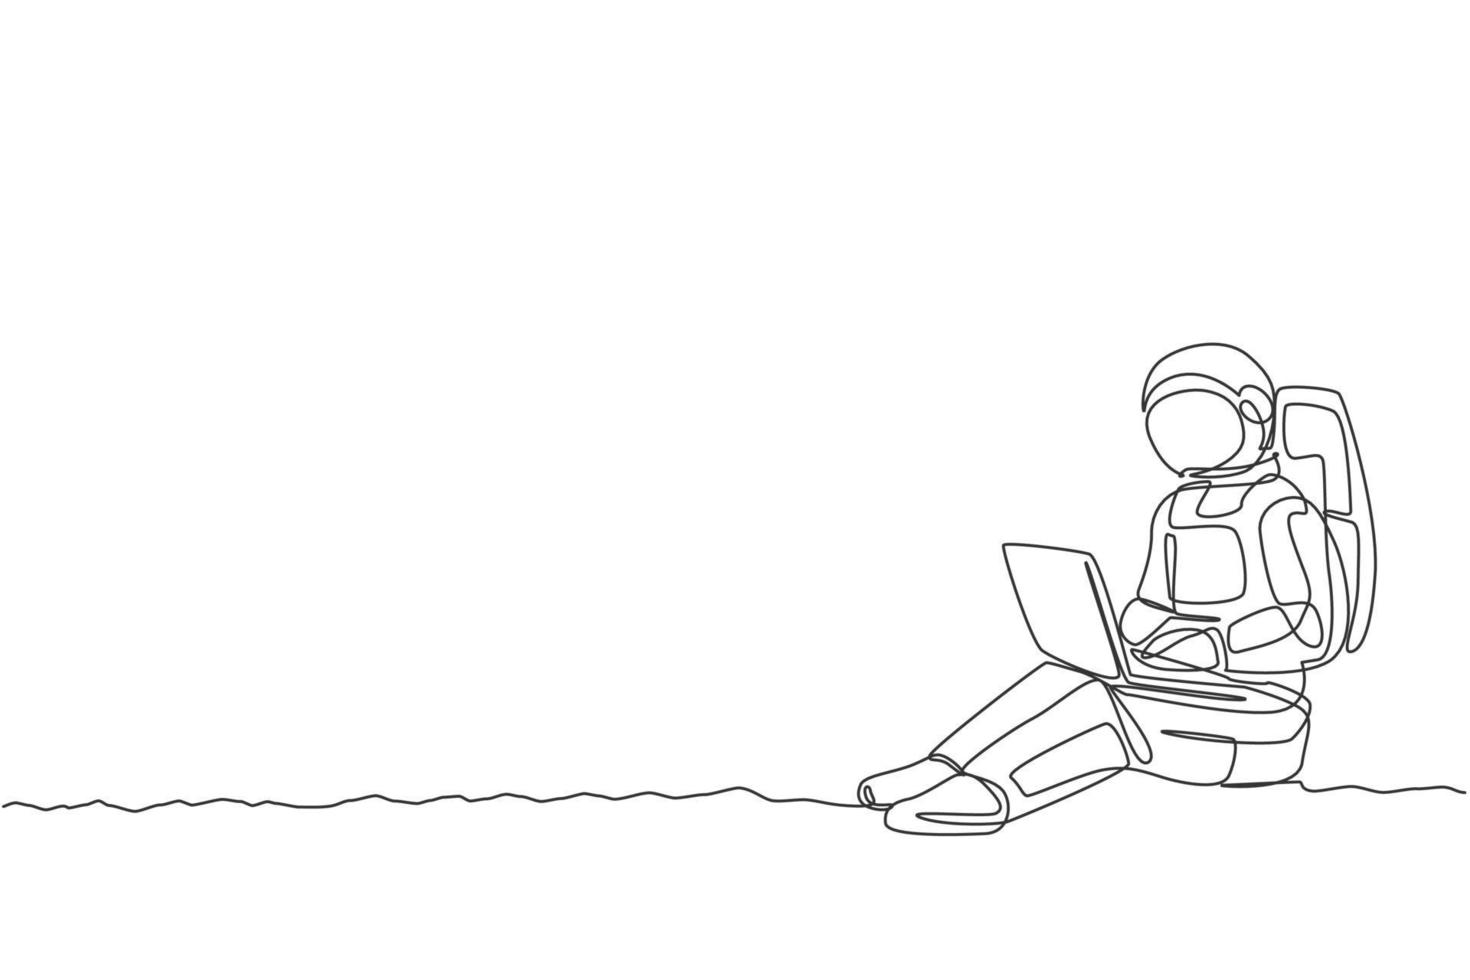 disegno a linea continua dell'astronauta seduto sulla superficie lunare mentre digita sul computer portatile. ufficio commerciale con il concetto di spazio cosmico della galassia. illustrazione vettoriale di design alla moda con una linea di disegno